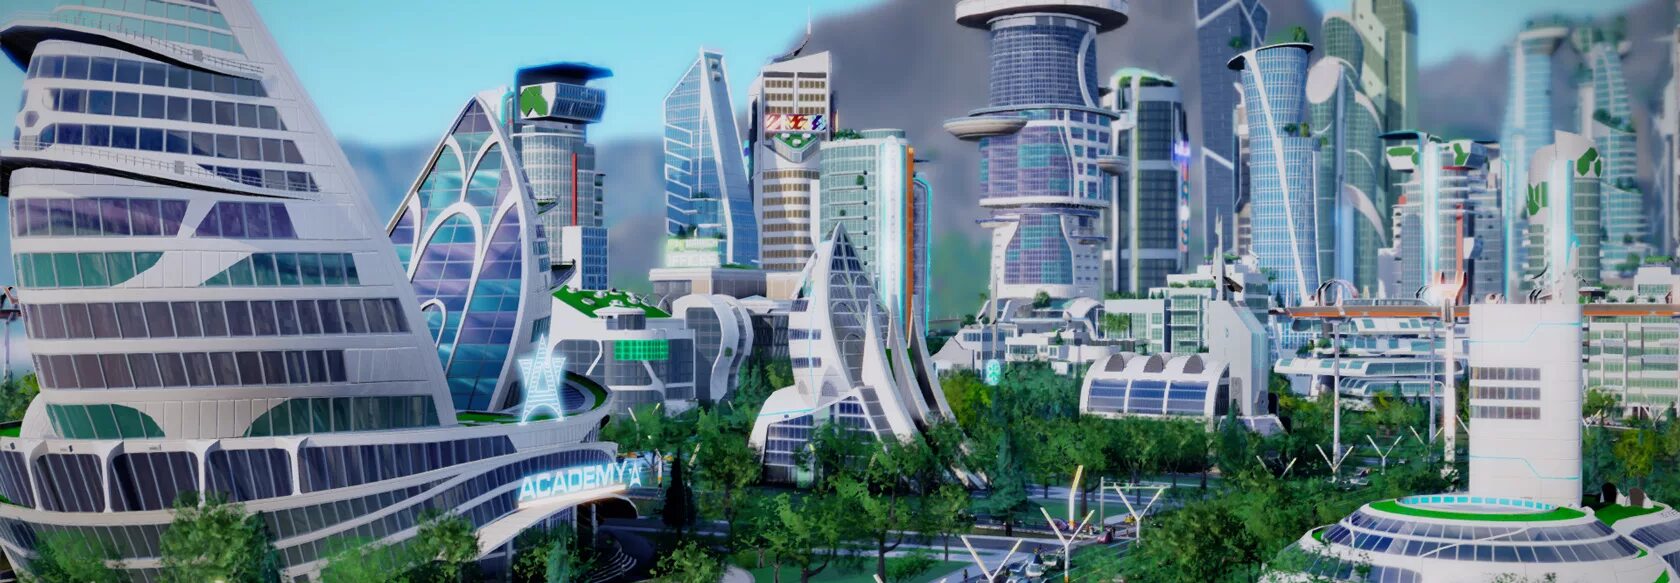 1 июня 2030 года. Астана Сити 2030. SIMCITY: Cities of tomorrow. Город будущего. Город в будущем.